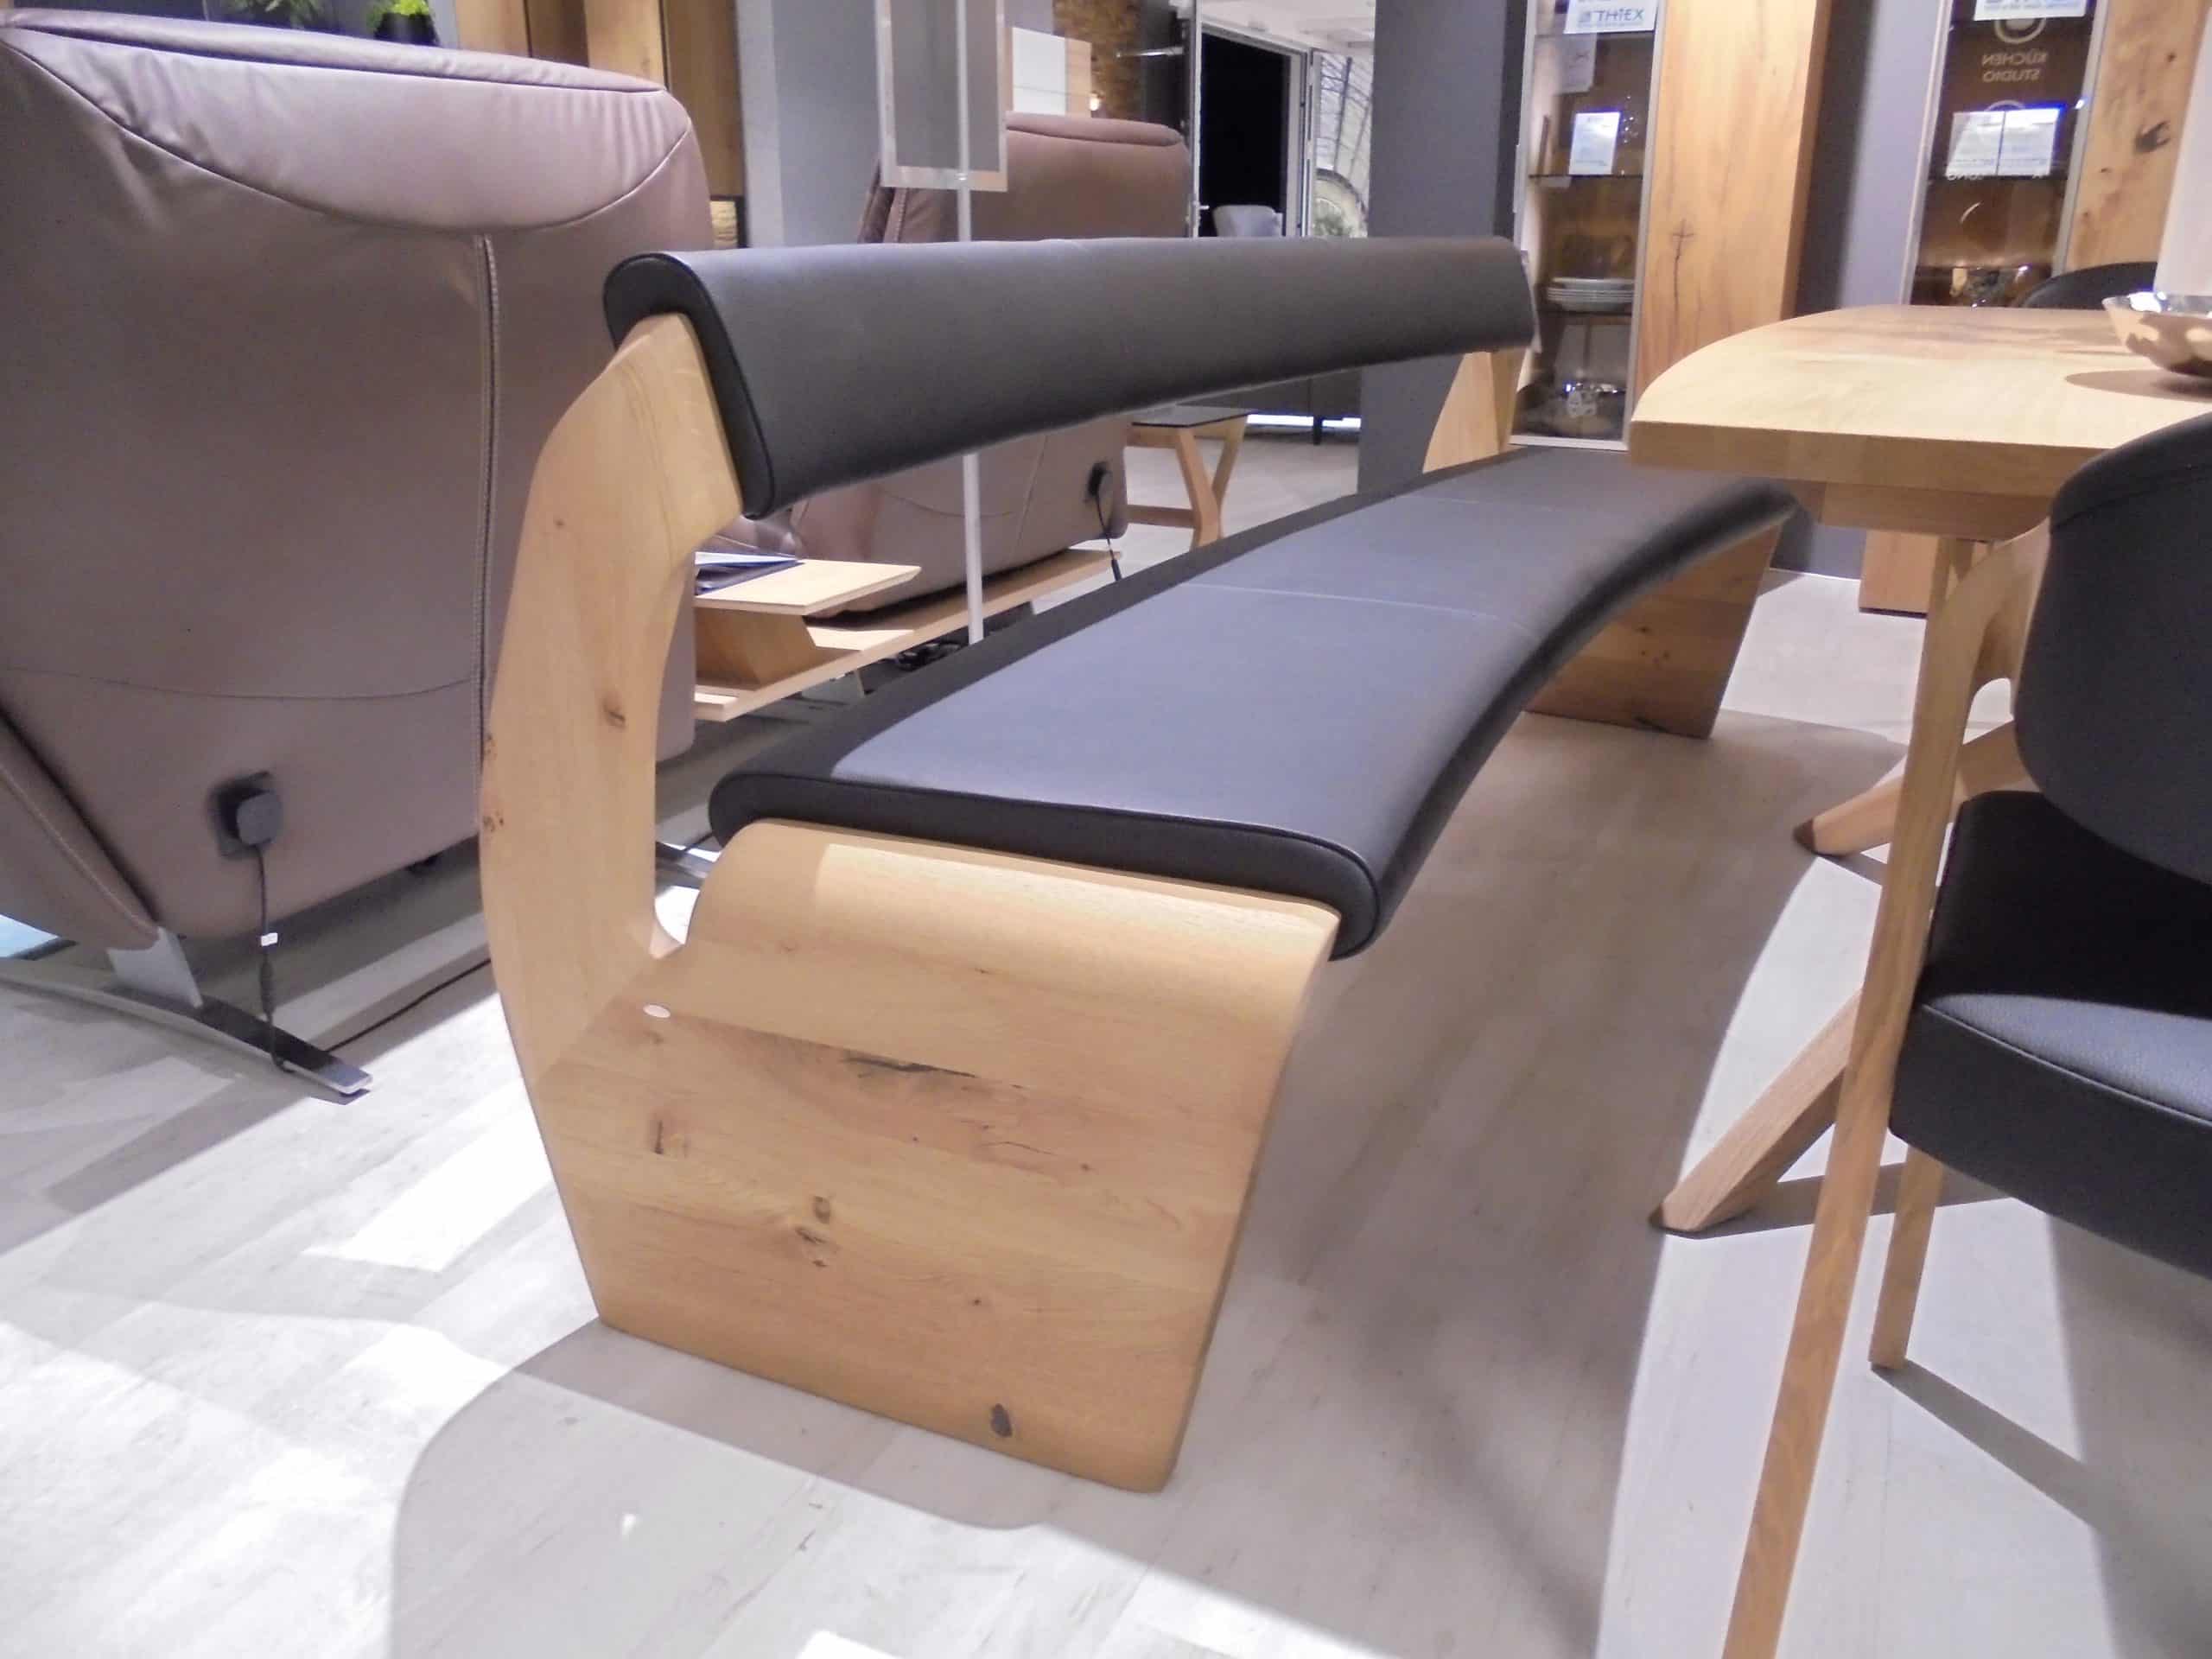 Im Möbelhaus Thiex gibt es derzeit einen Abverkauf der Tischgruppe Valpin in Eiche Altholz mit Lederbezug. Die Tischgruppe besteht aus einem Esstisch, einer Bank und 5 Stühlen. Die gesamte Tischgruppe ist um 30% reduziert.